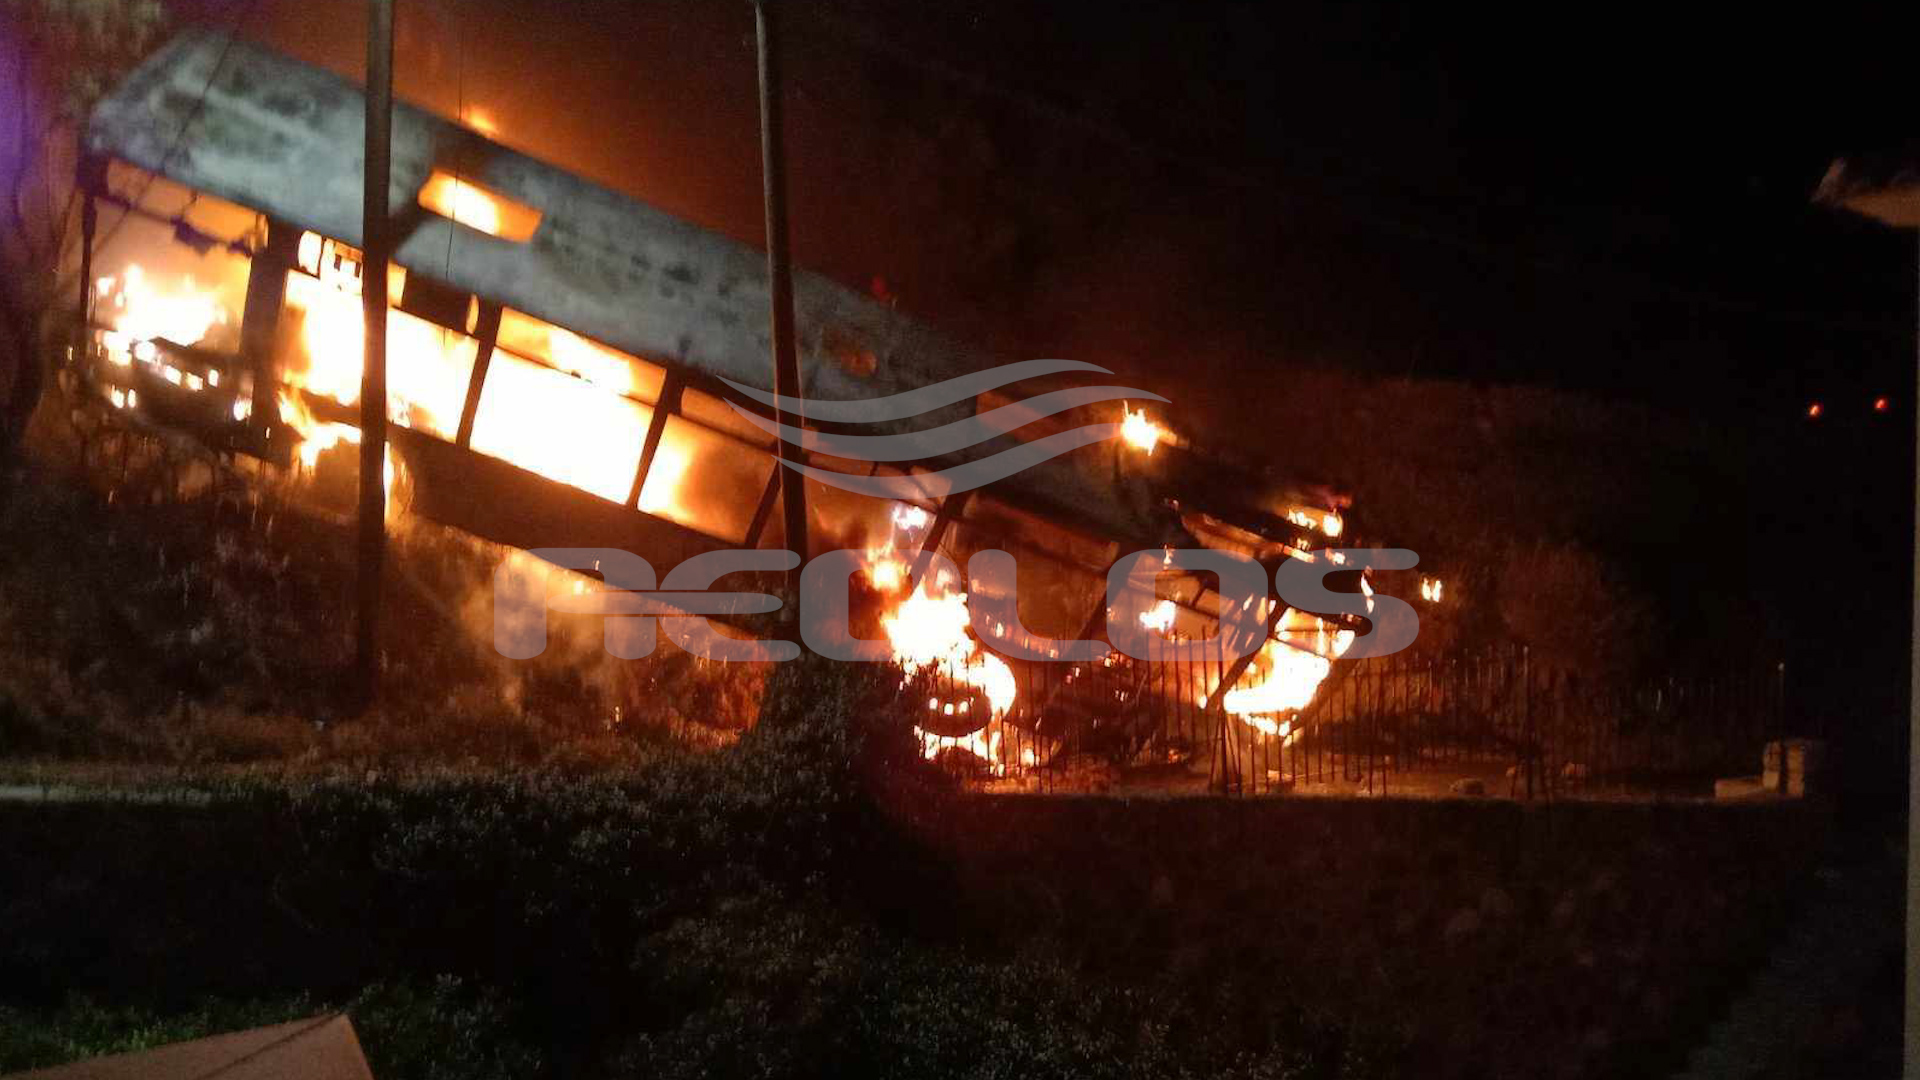 Συγκλονιστικές εικόνες από το φλεγόμενο λεωφορείο μια ανάσα από το σπίτι που κινδύνευσε να καεί